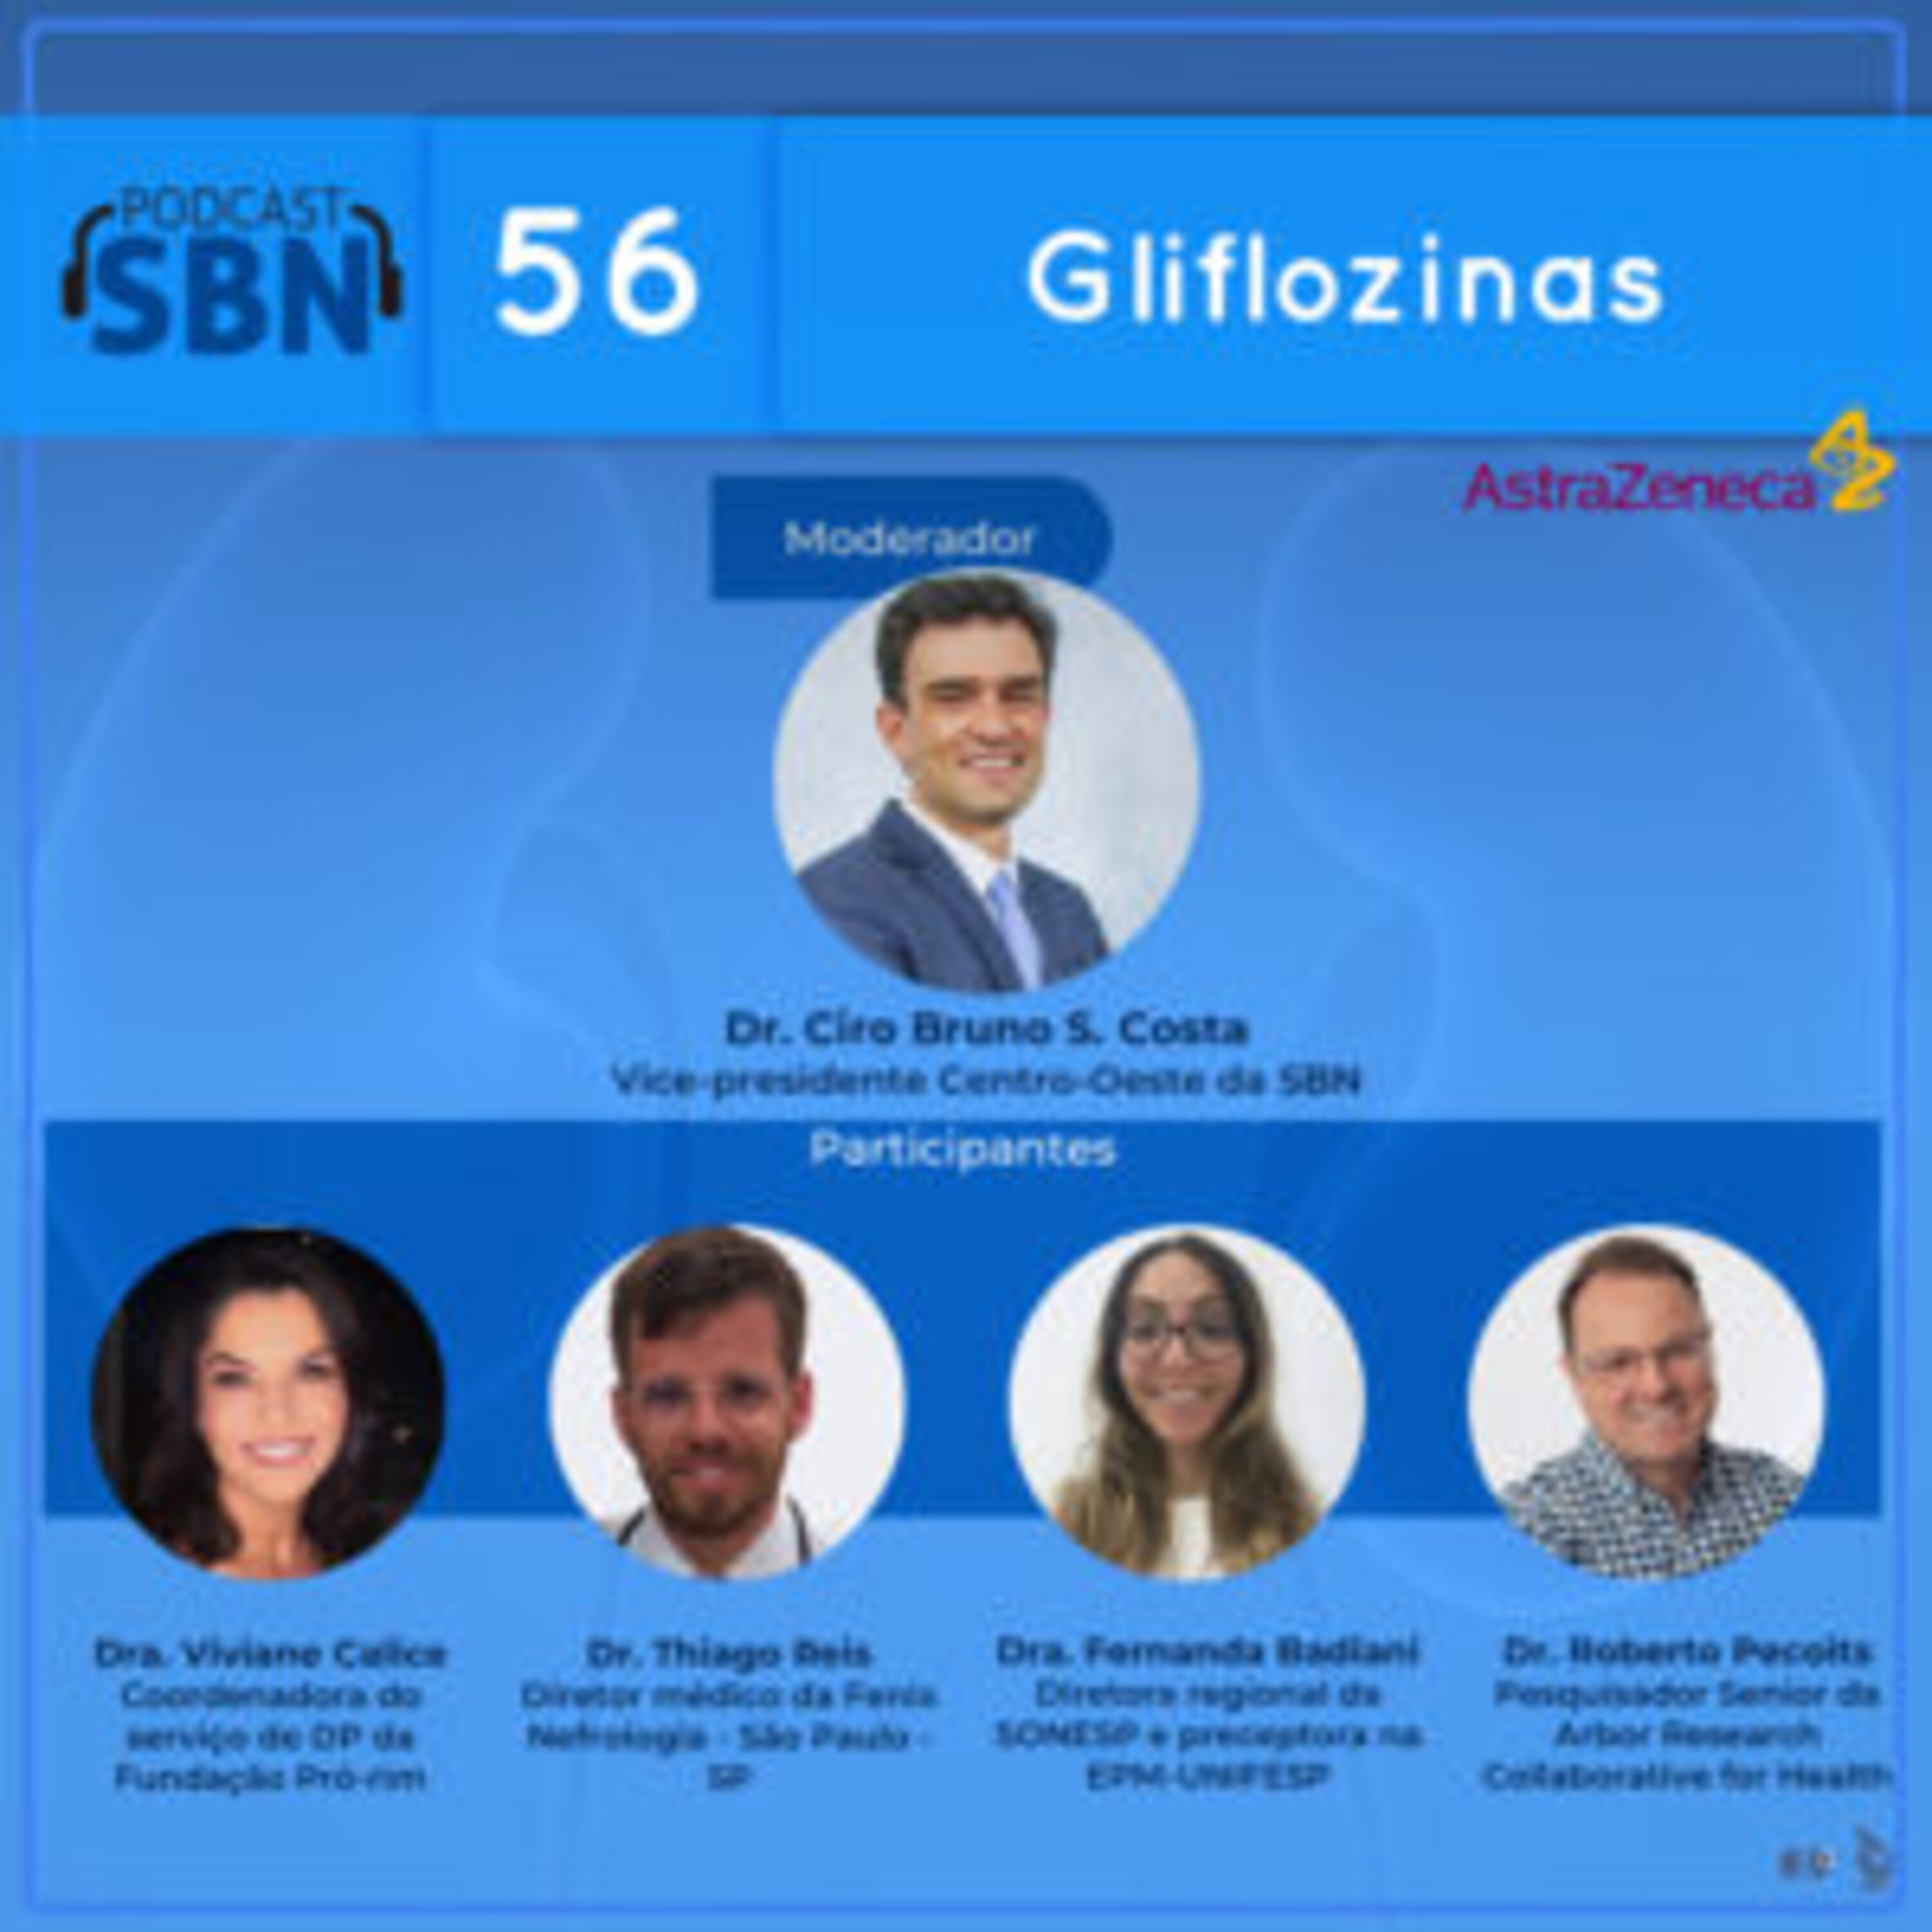 Gliflozinas, nova opção de tratamento da Doença Renal Crônica? (SBN #56)